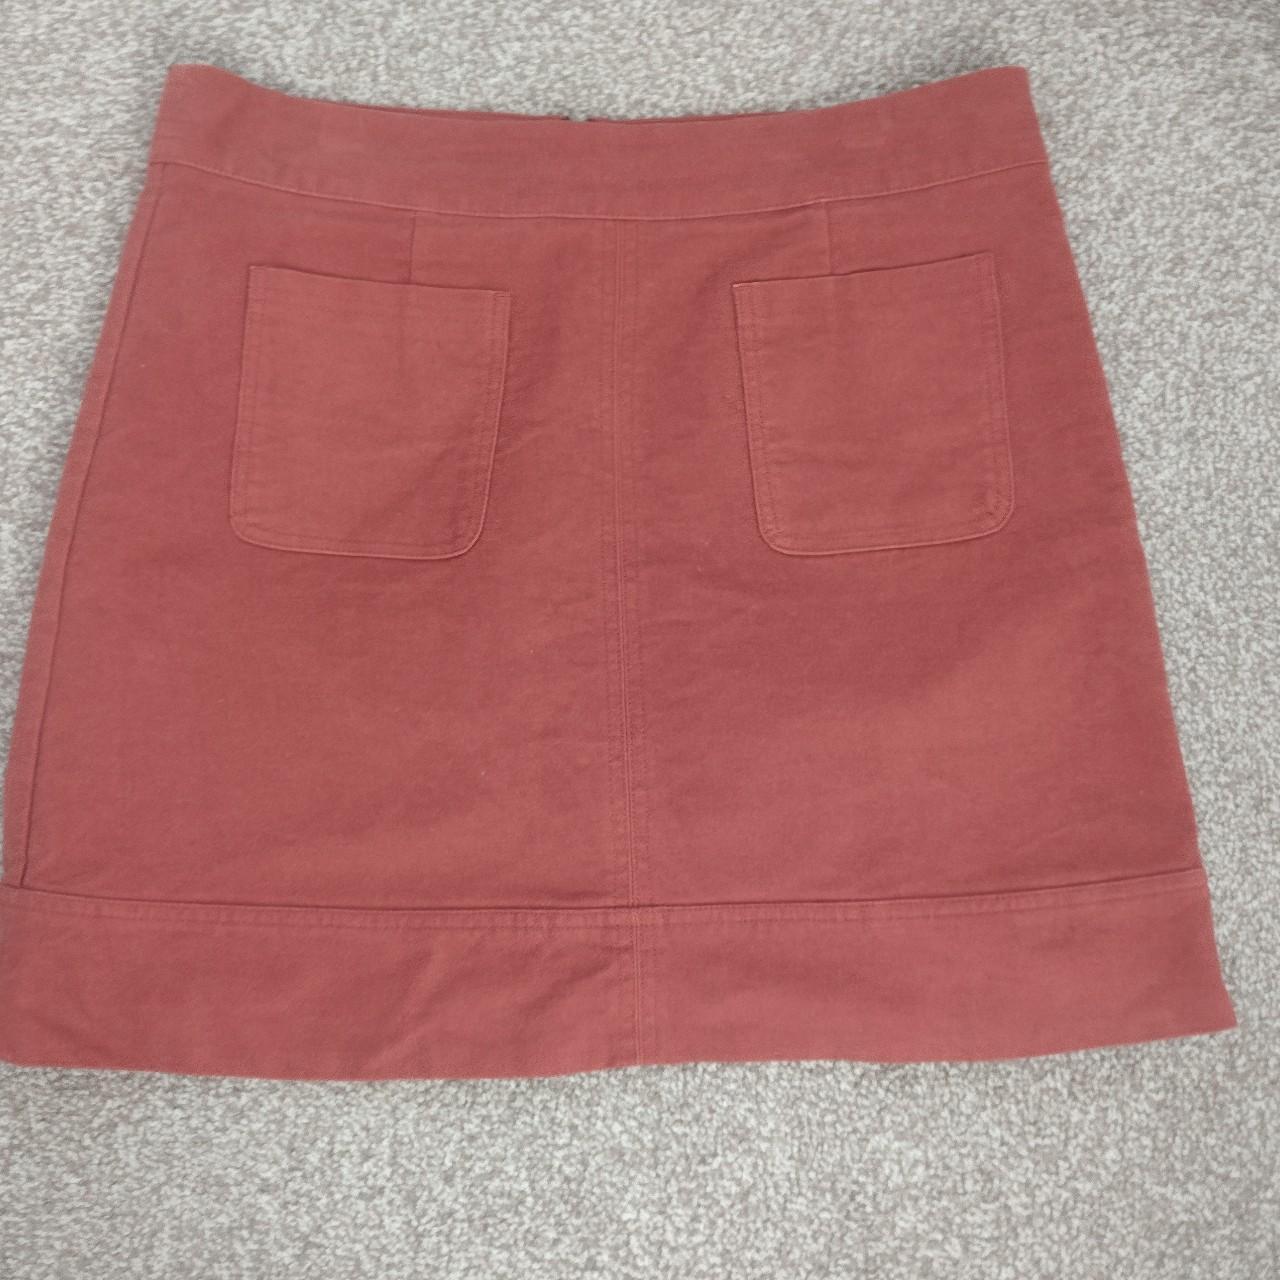 Boden skirt size 14 great condition velvet feel - Depop